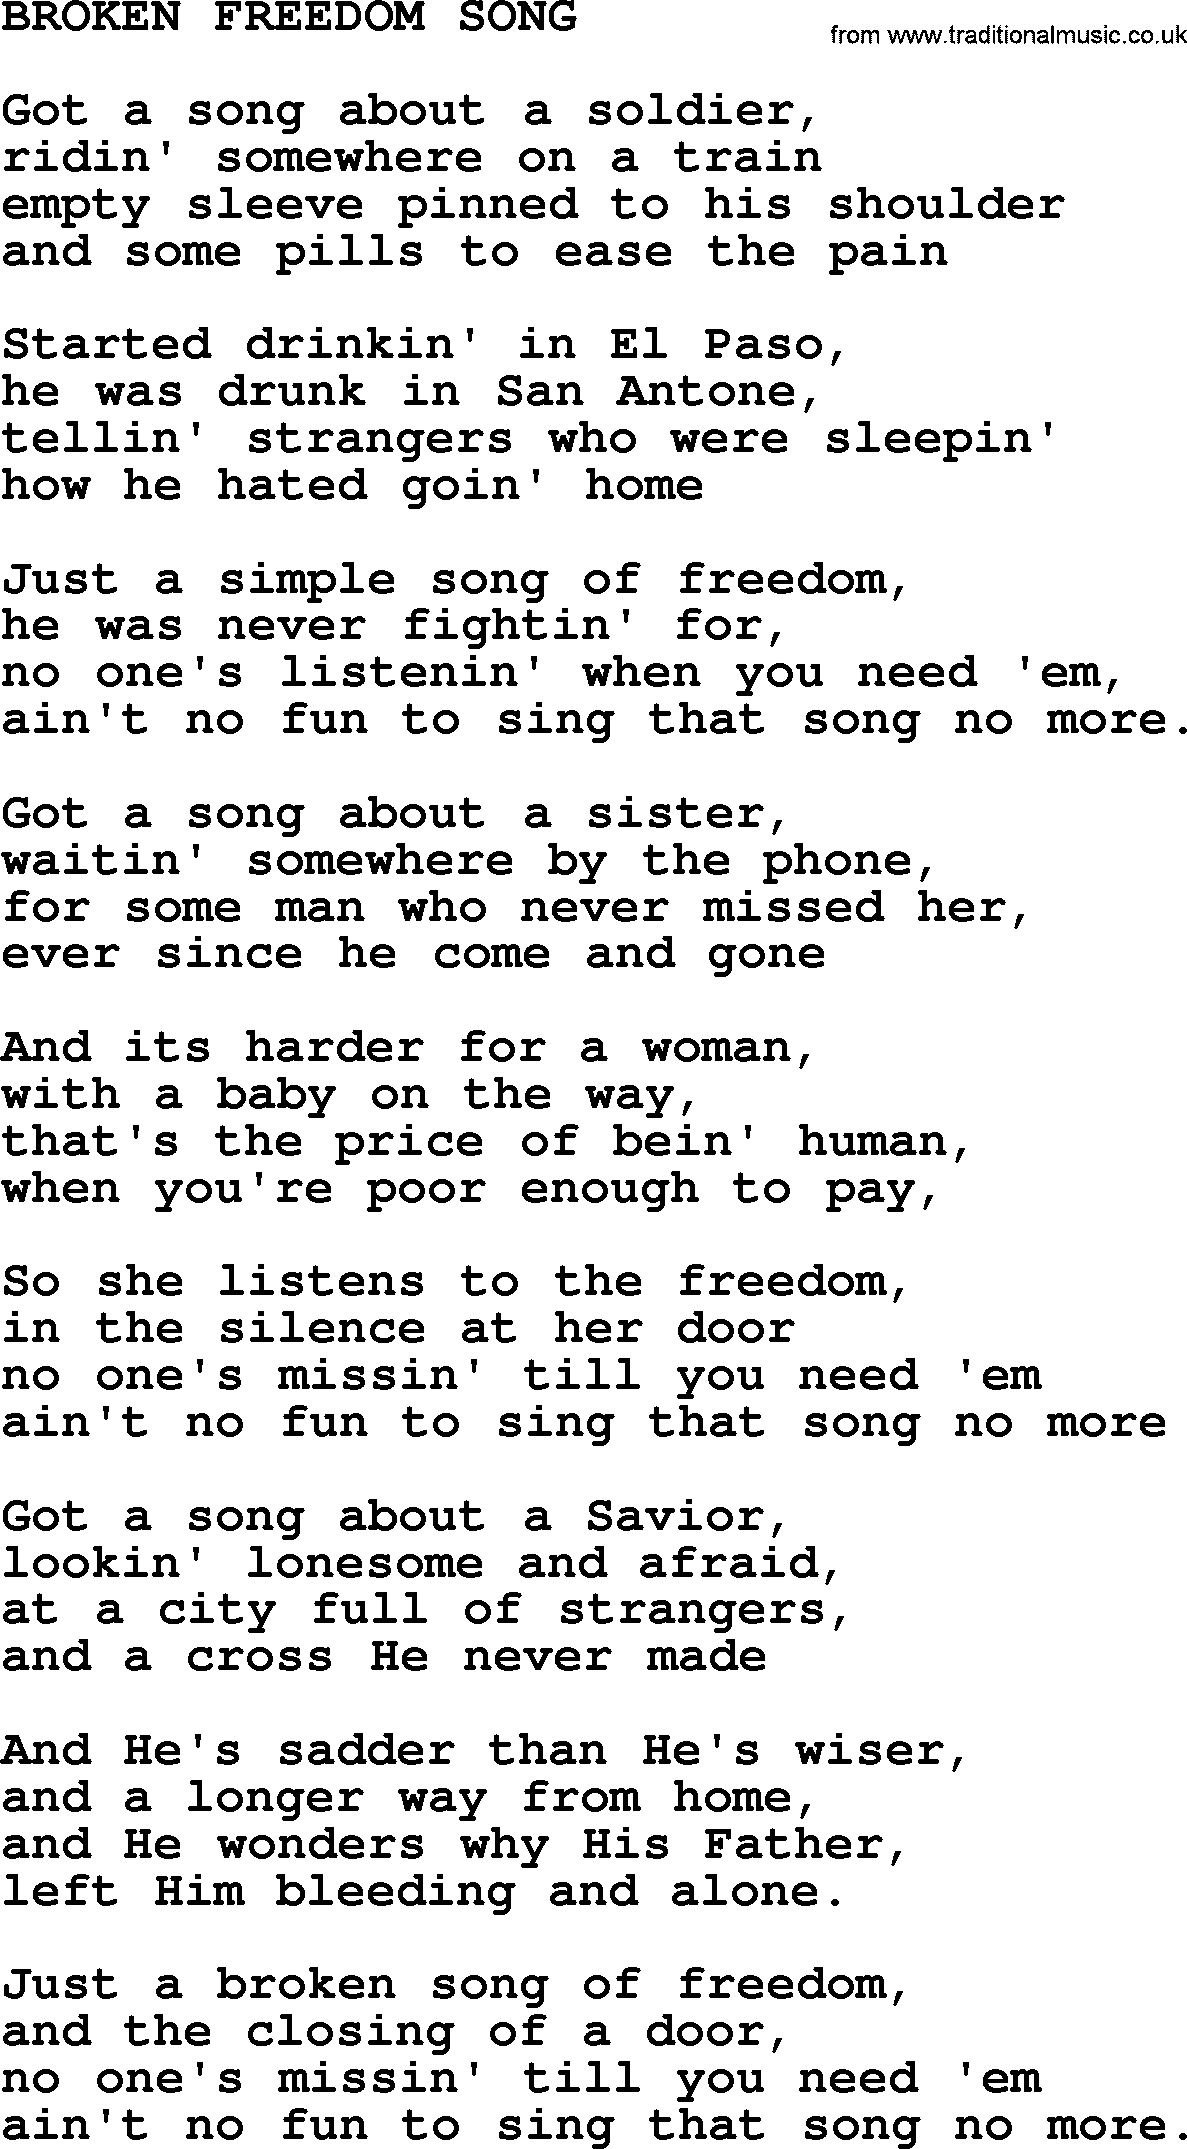 Kris Kristofferson song: Broken Freedom Song lyrics